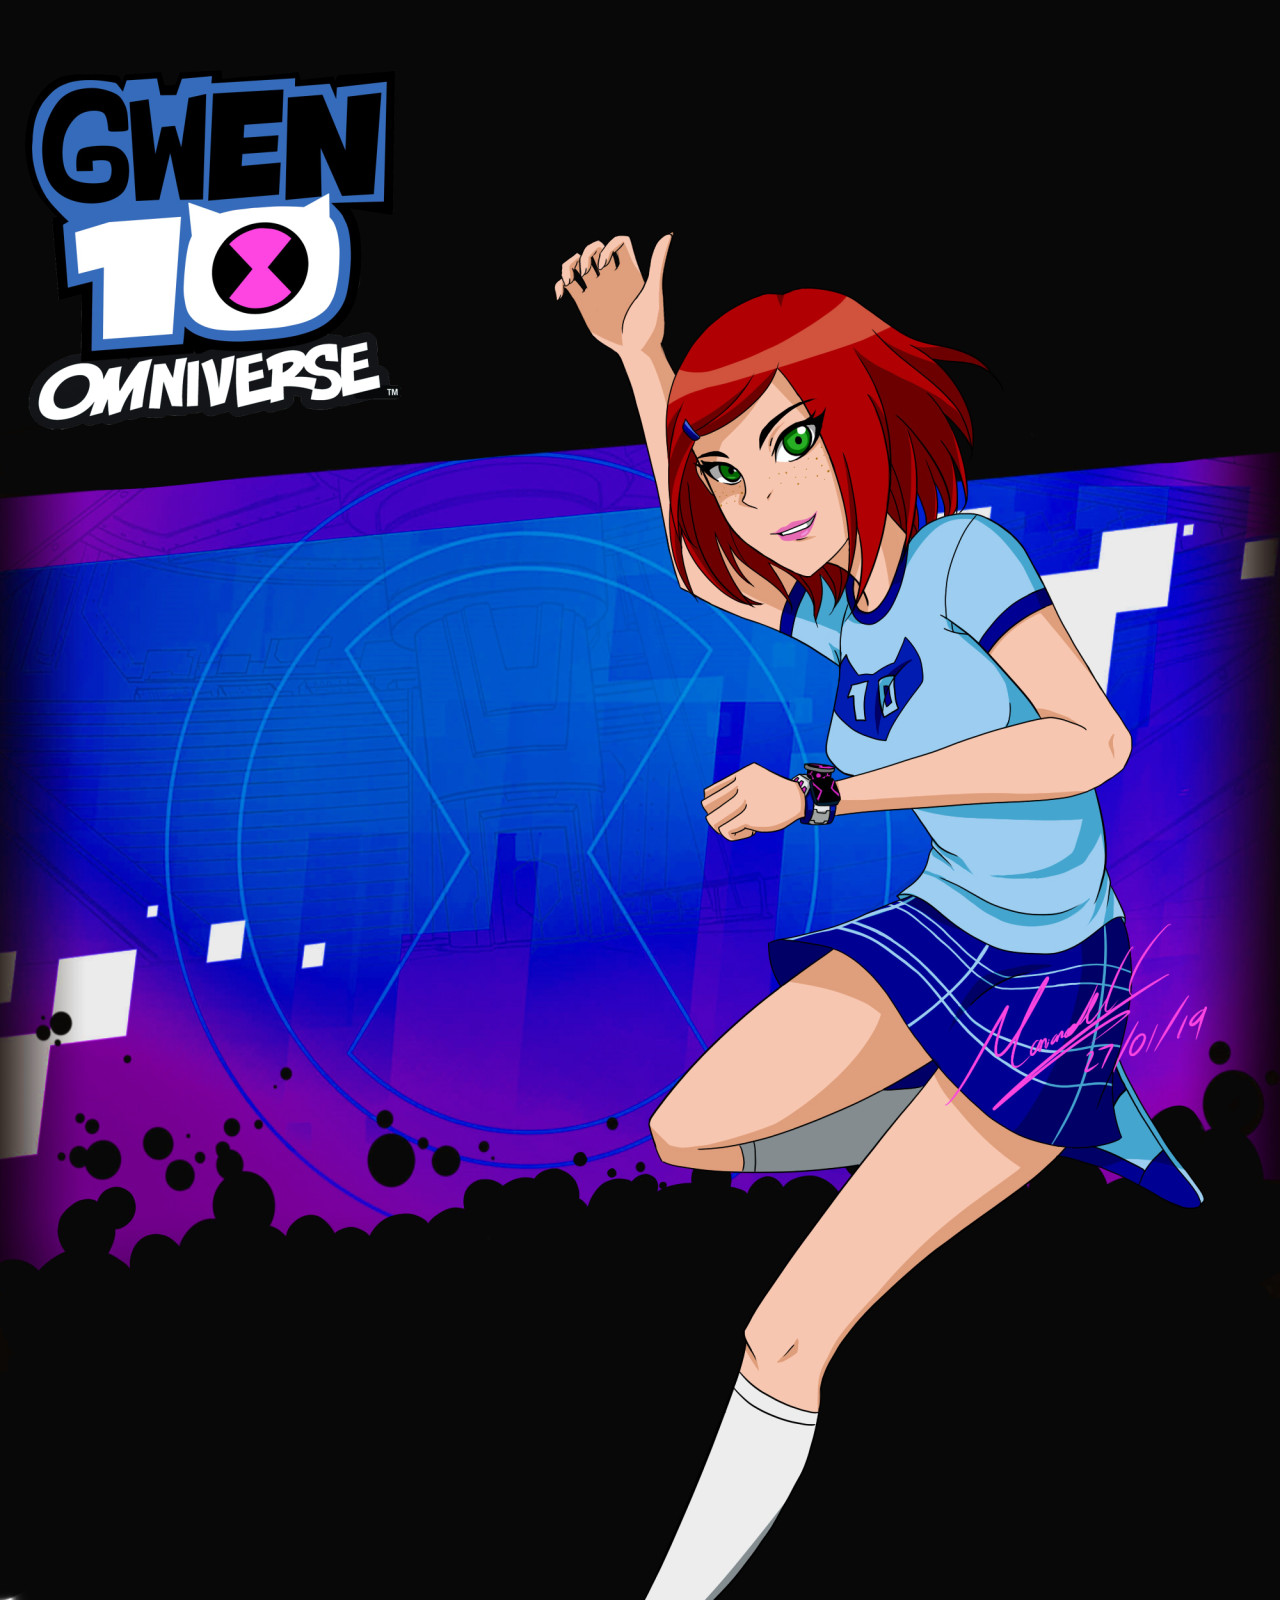 Ben 10 Omniverse - OC Zoe by Carmen-Oda on DeviantArt